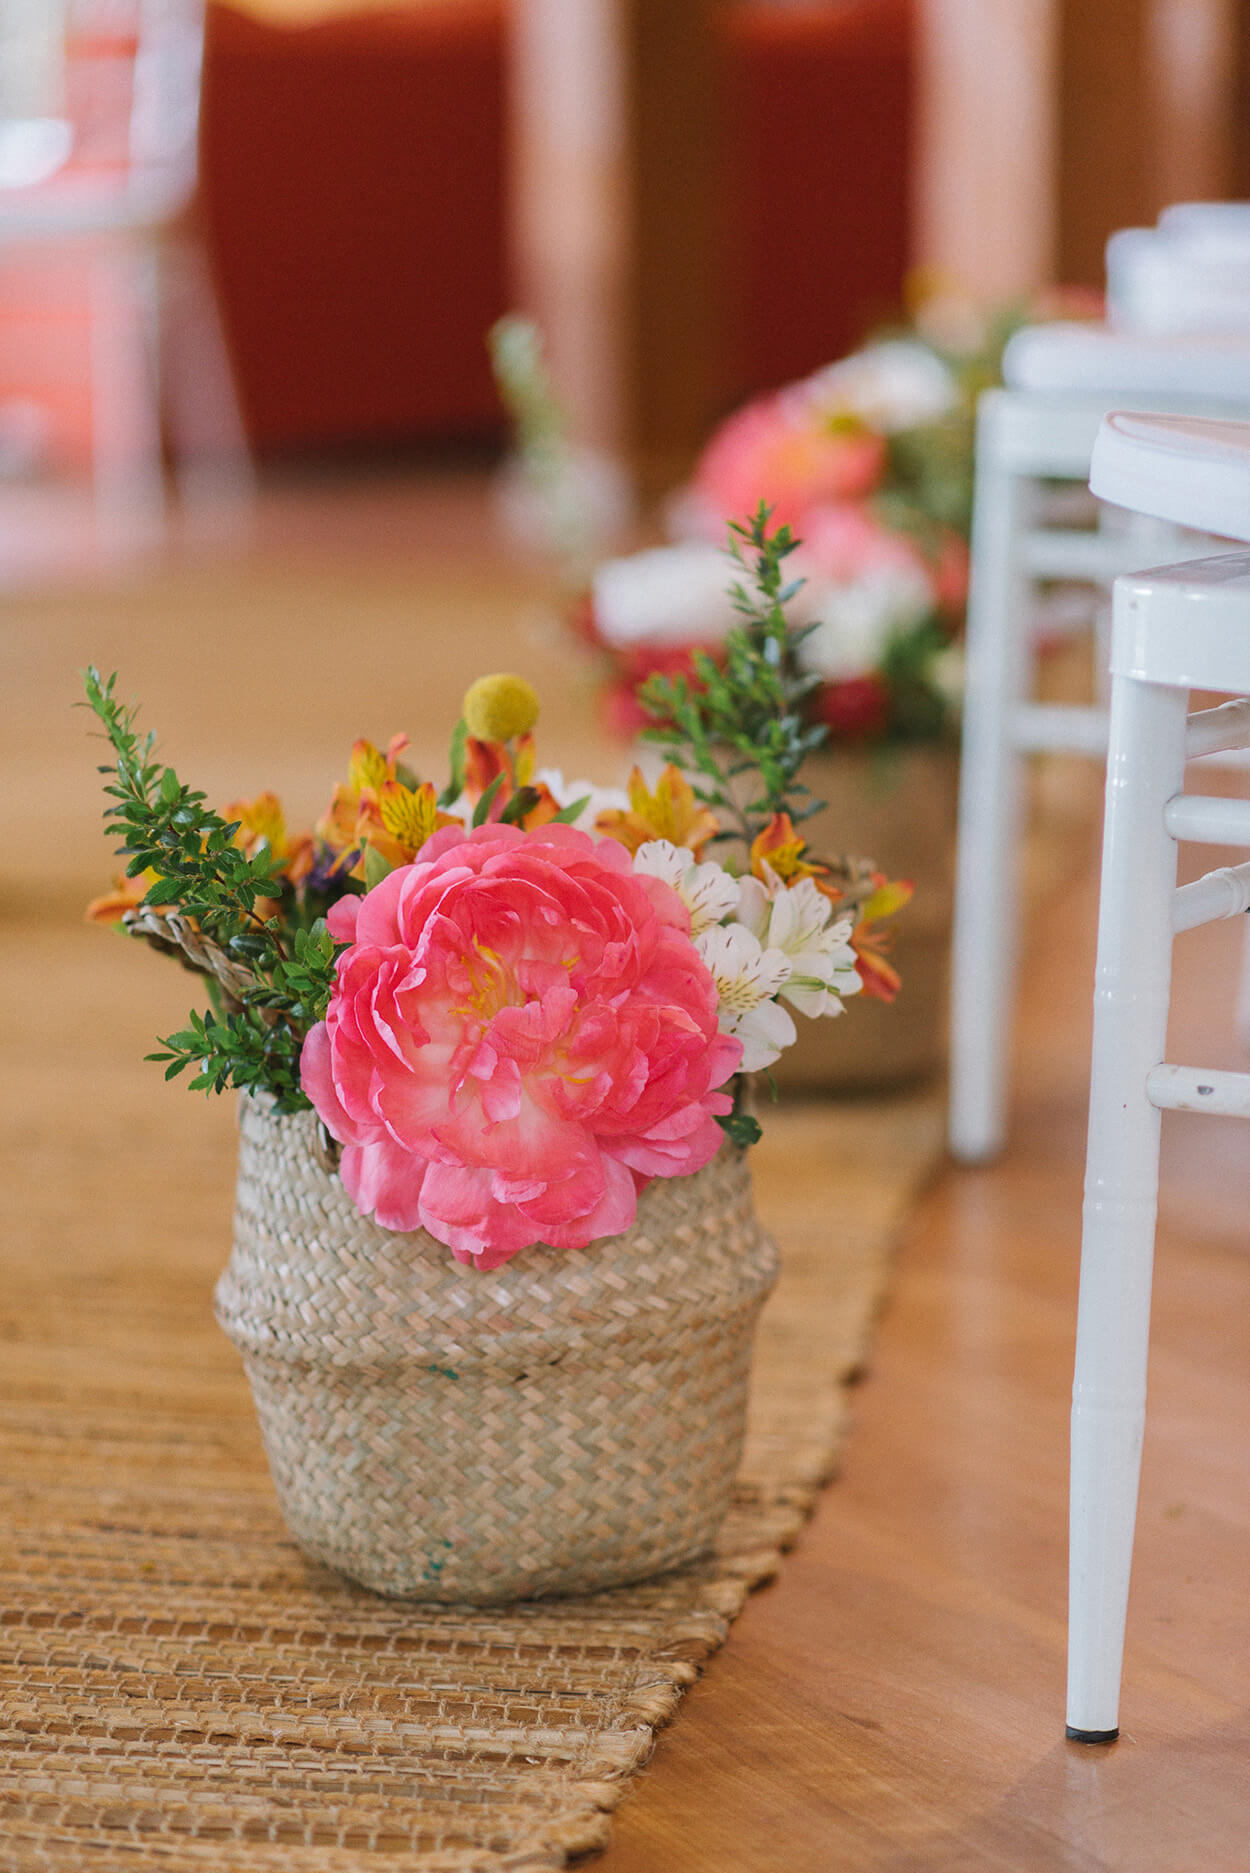 vaso rústico com flores rosas laranjas e brancas